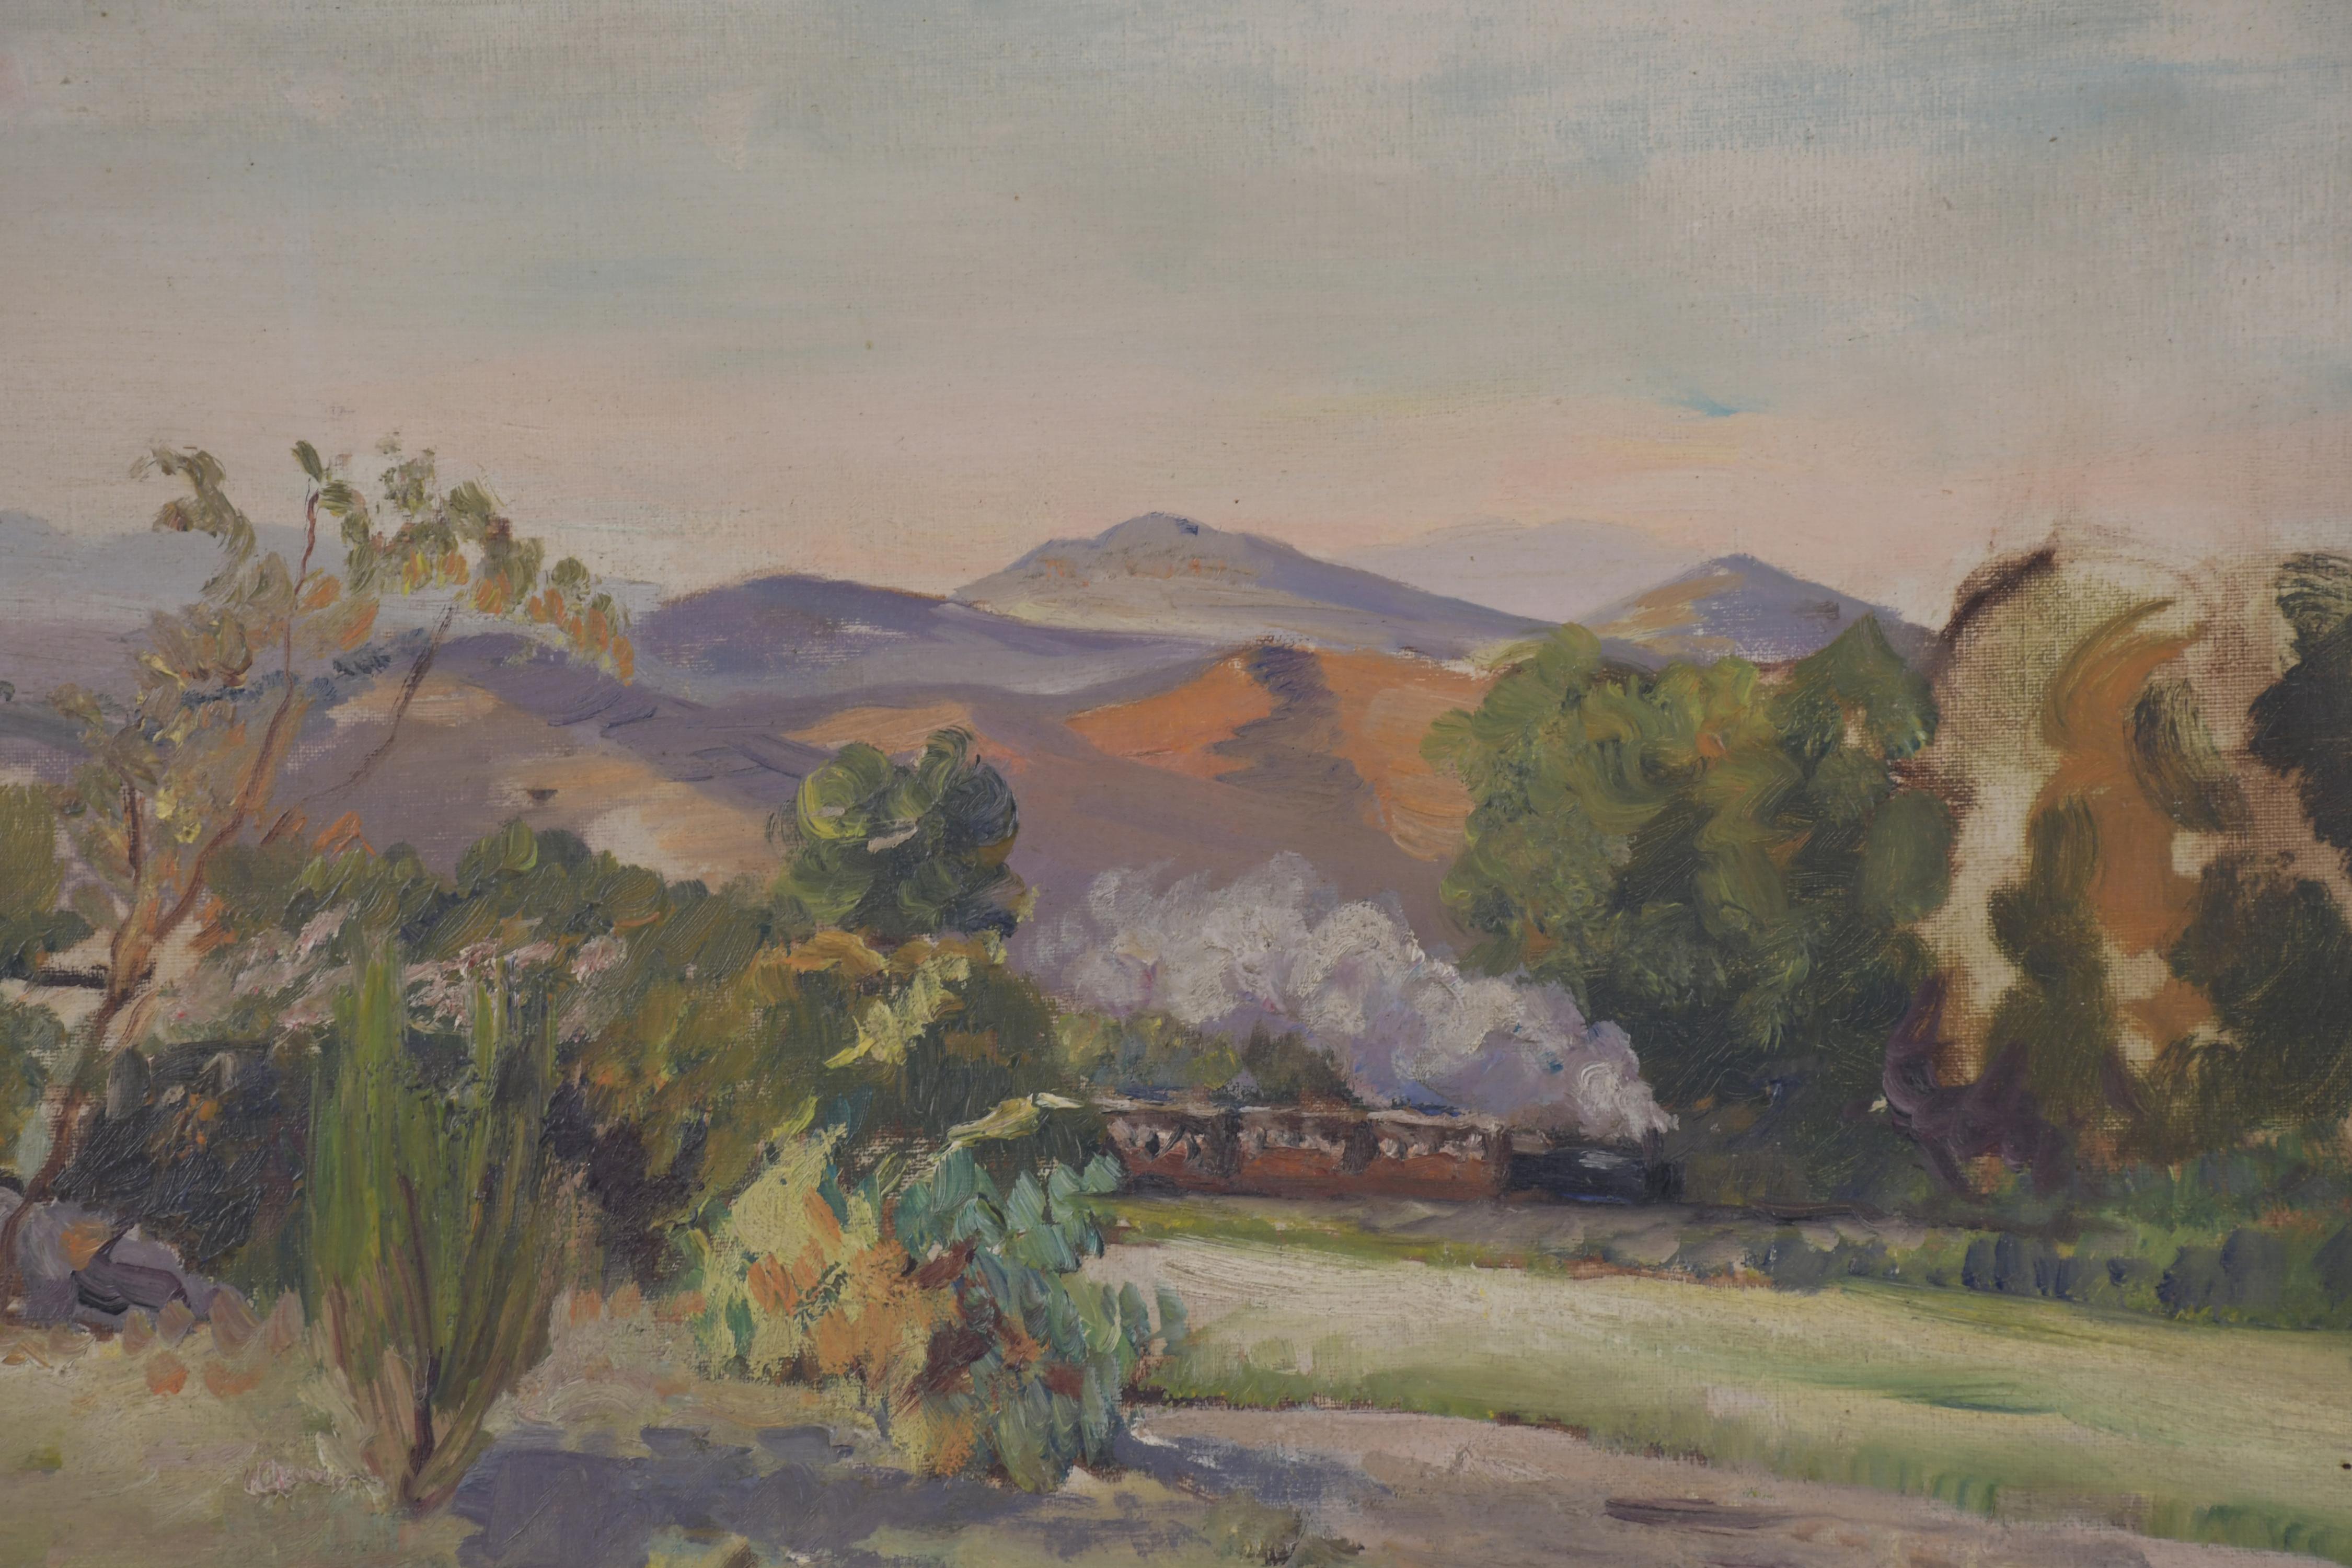 RAFAEL LLIMONA BENET (1896-1957). "EL TREN".